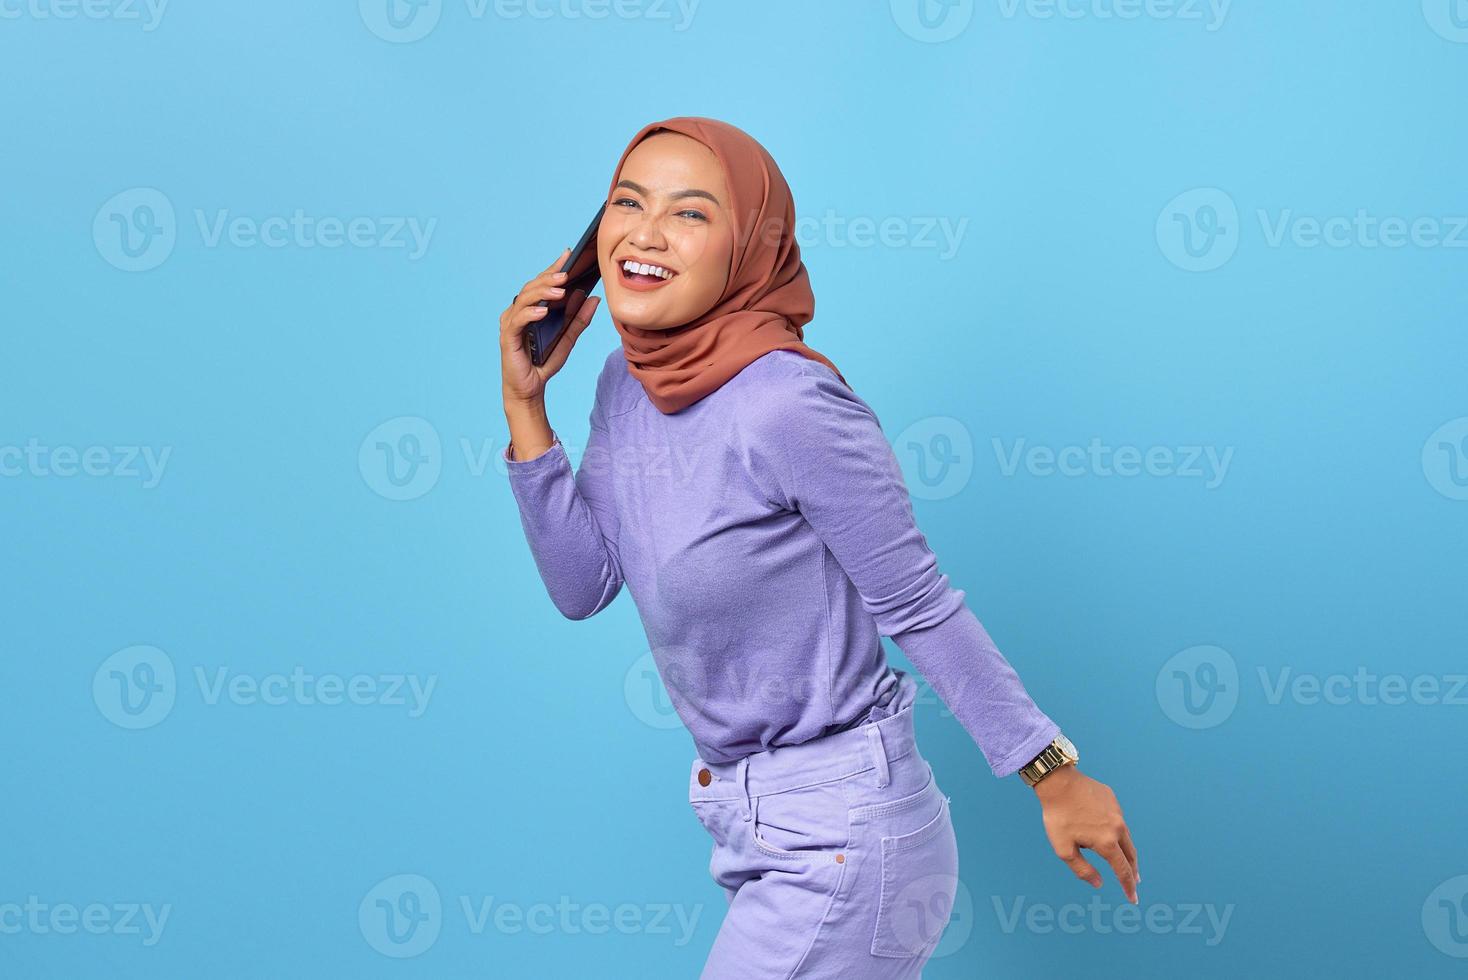 vrolijke jonge Aziatische vrouw praten op een mobiele telefoon met haar vriendje geïsoleerd op blauwe achtergrond foto